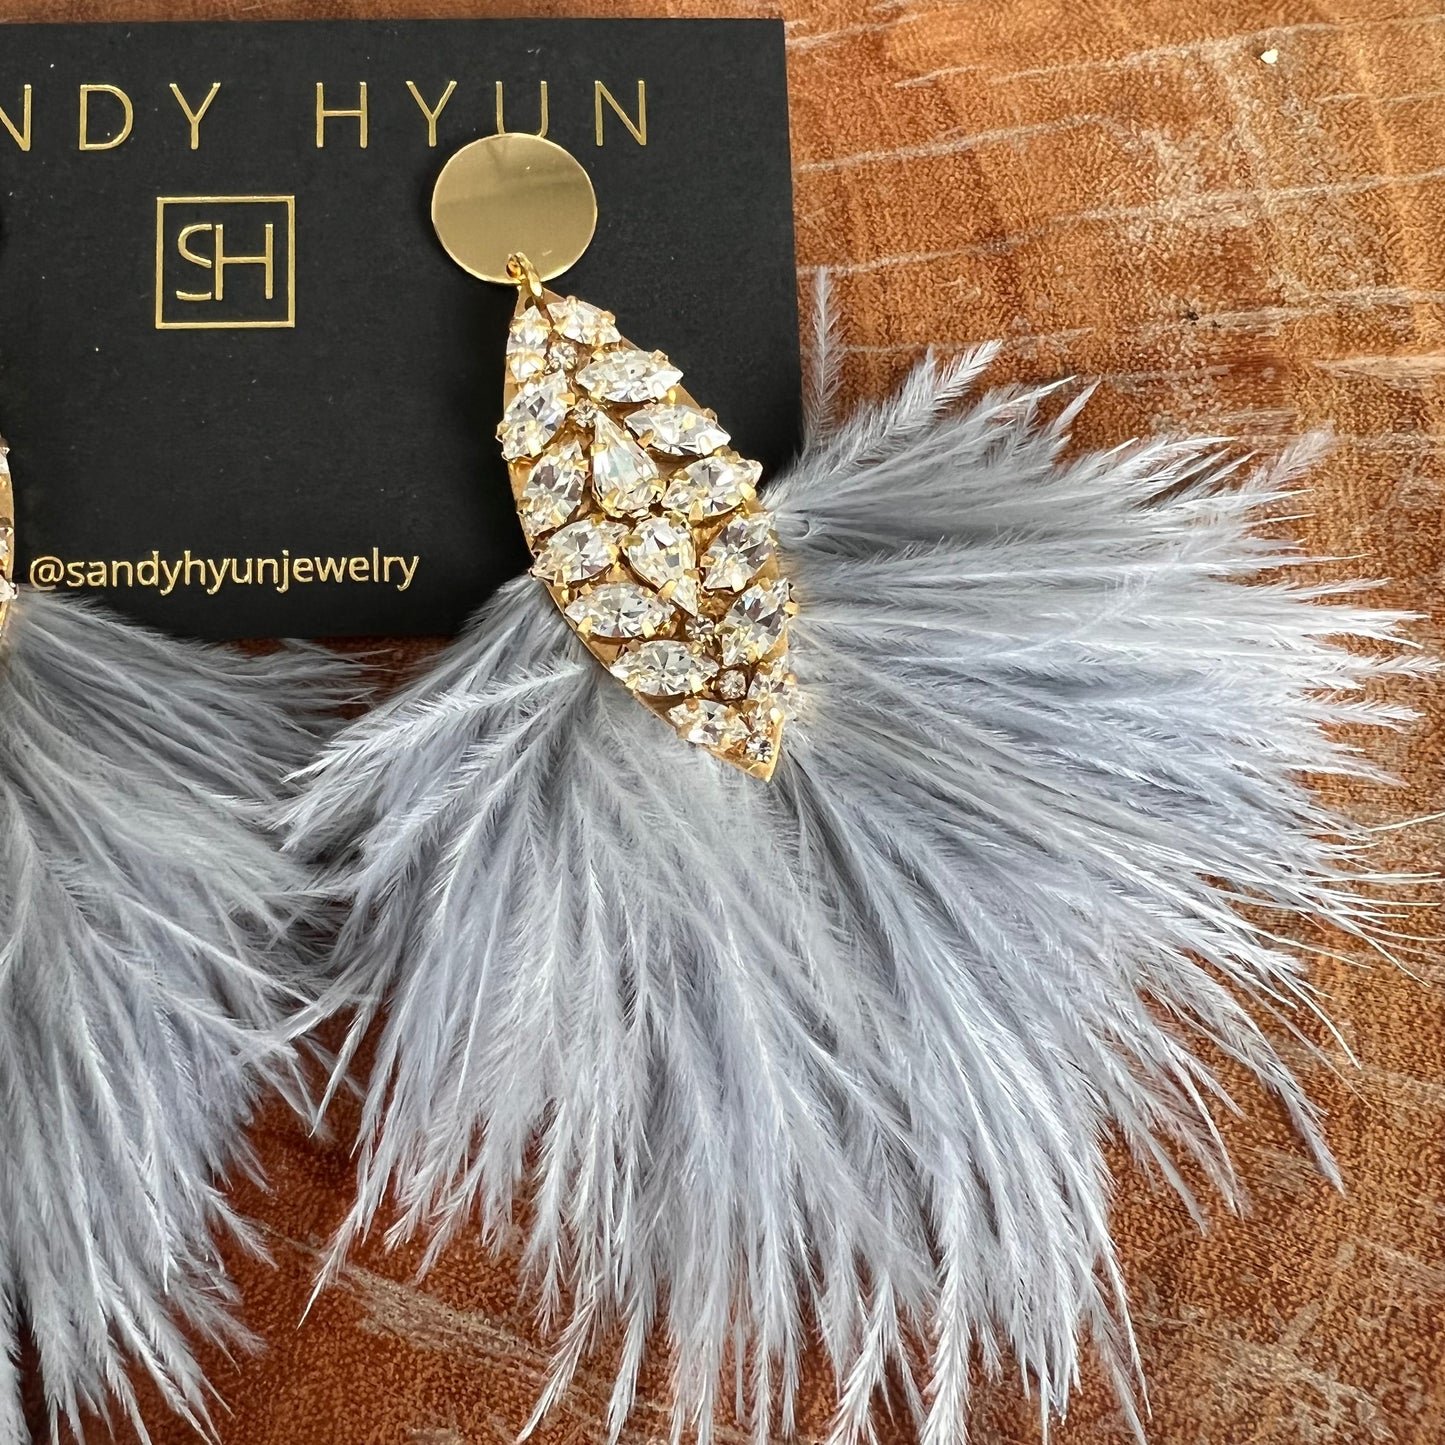 Sandy Hyun Big Feather Crystal Drops